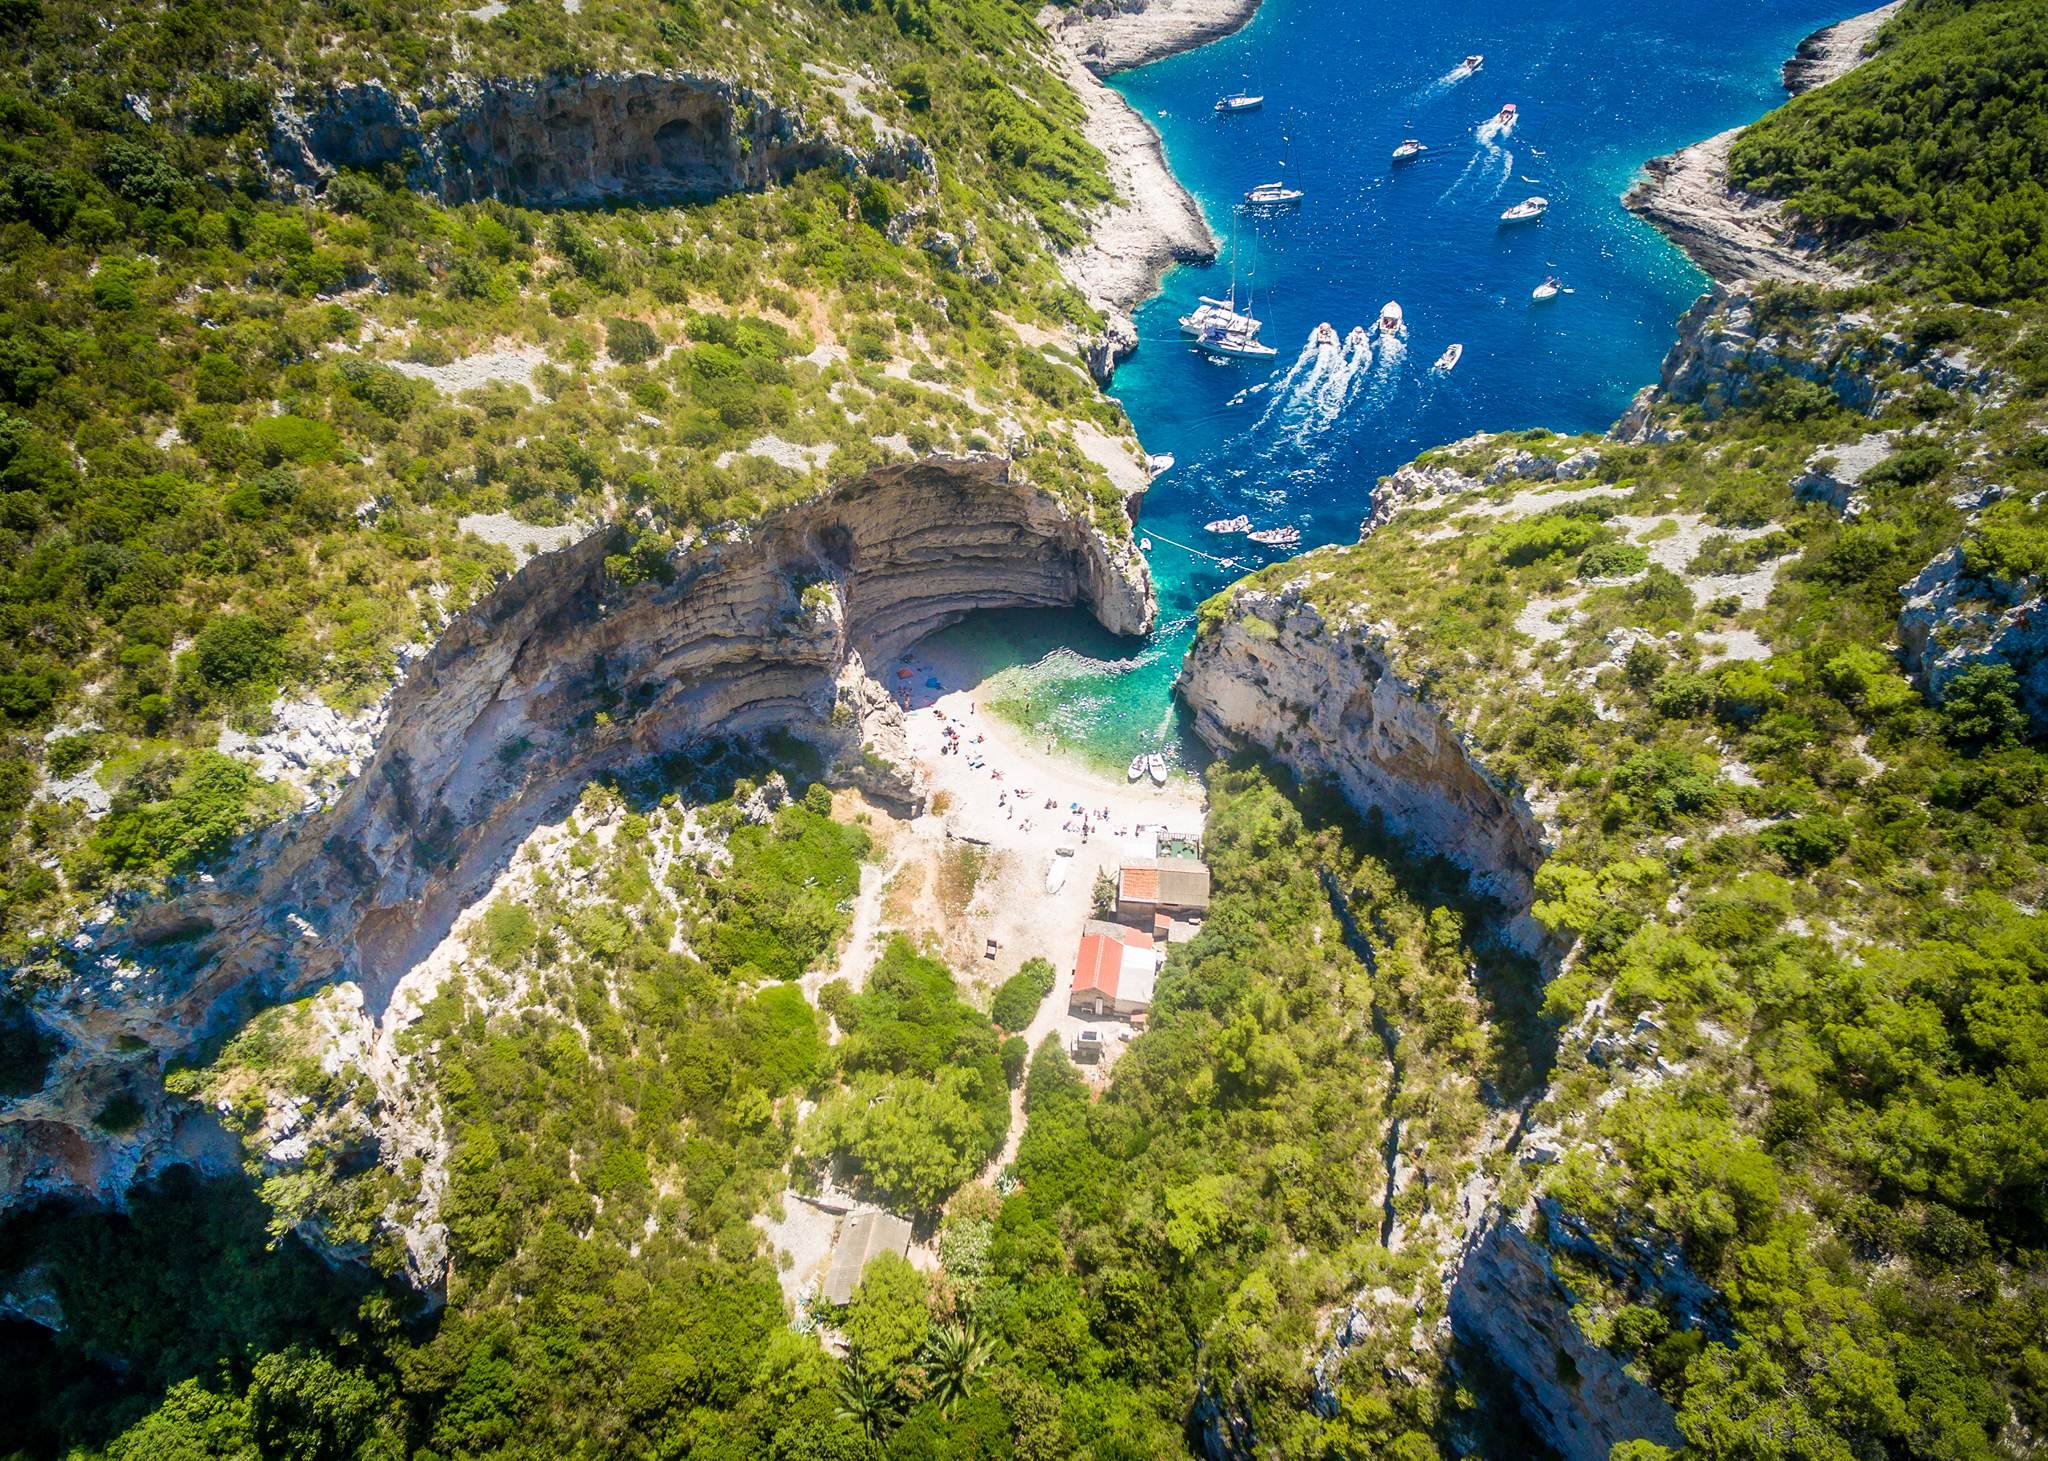 Europe’s Best 52 Secret Beaches Features 5 in Croatia AnteBabic